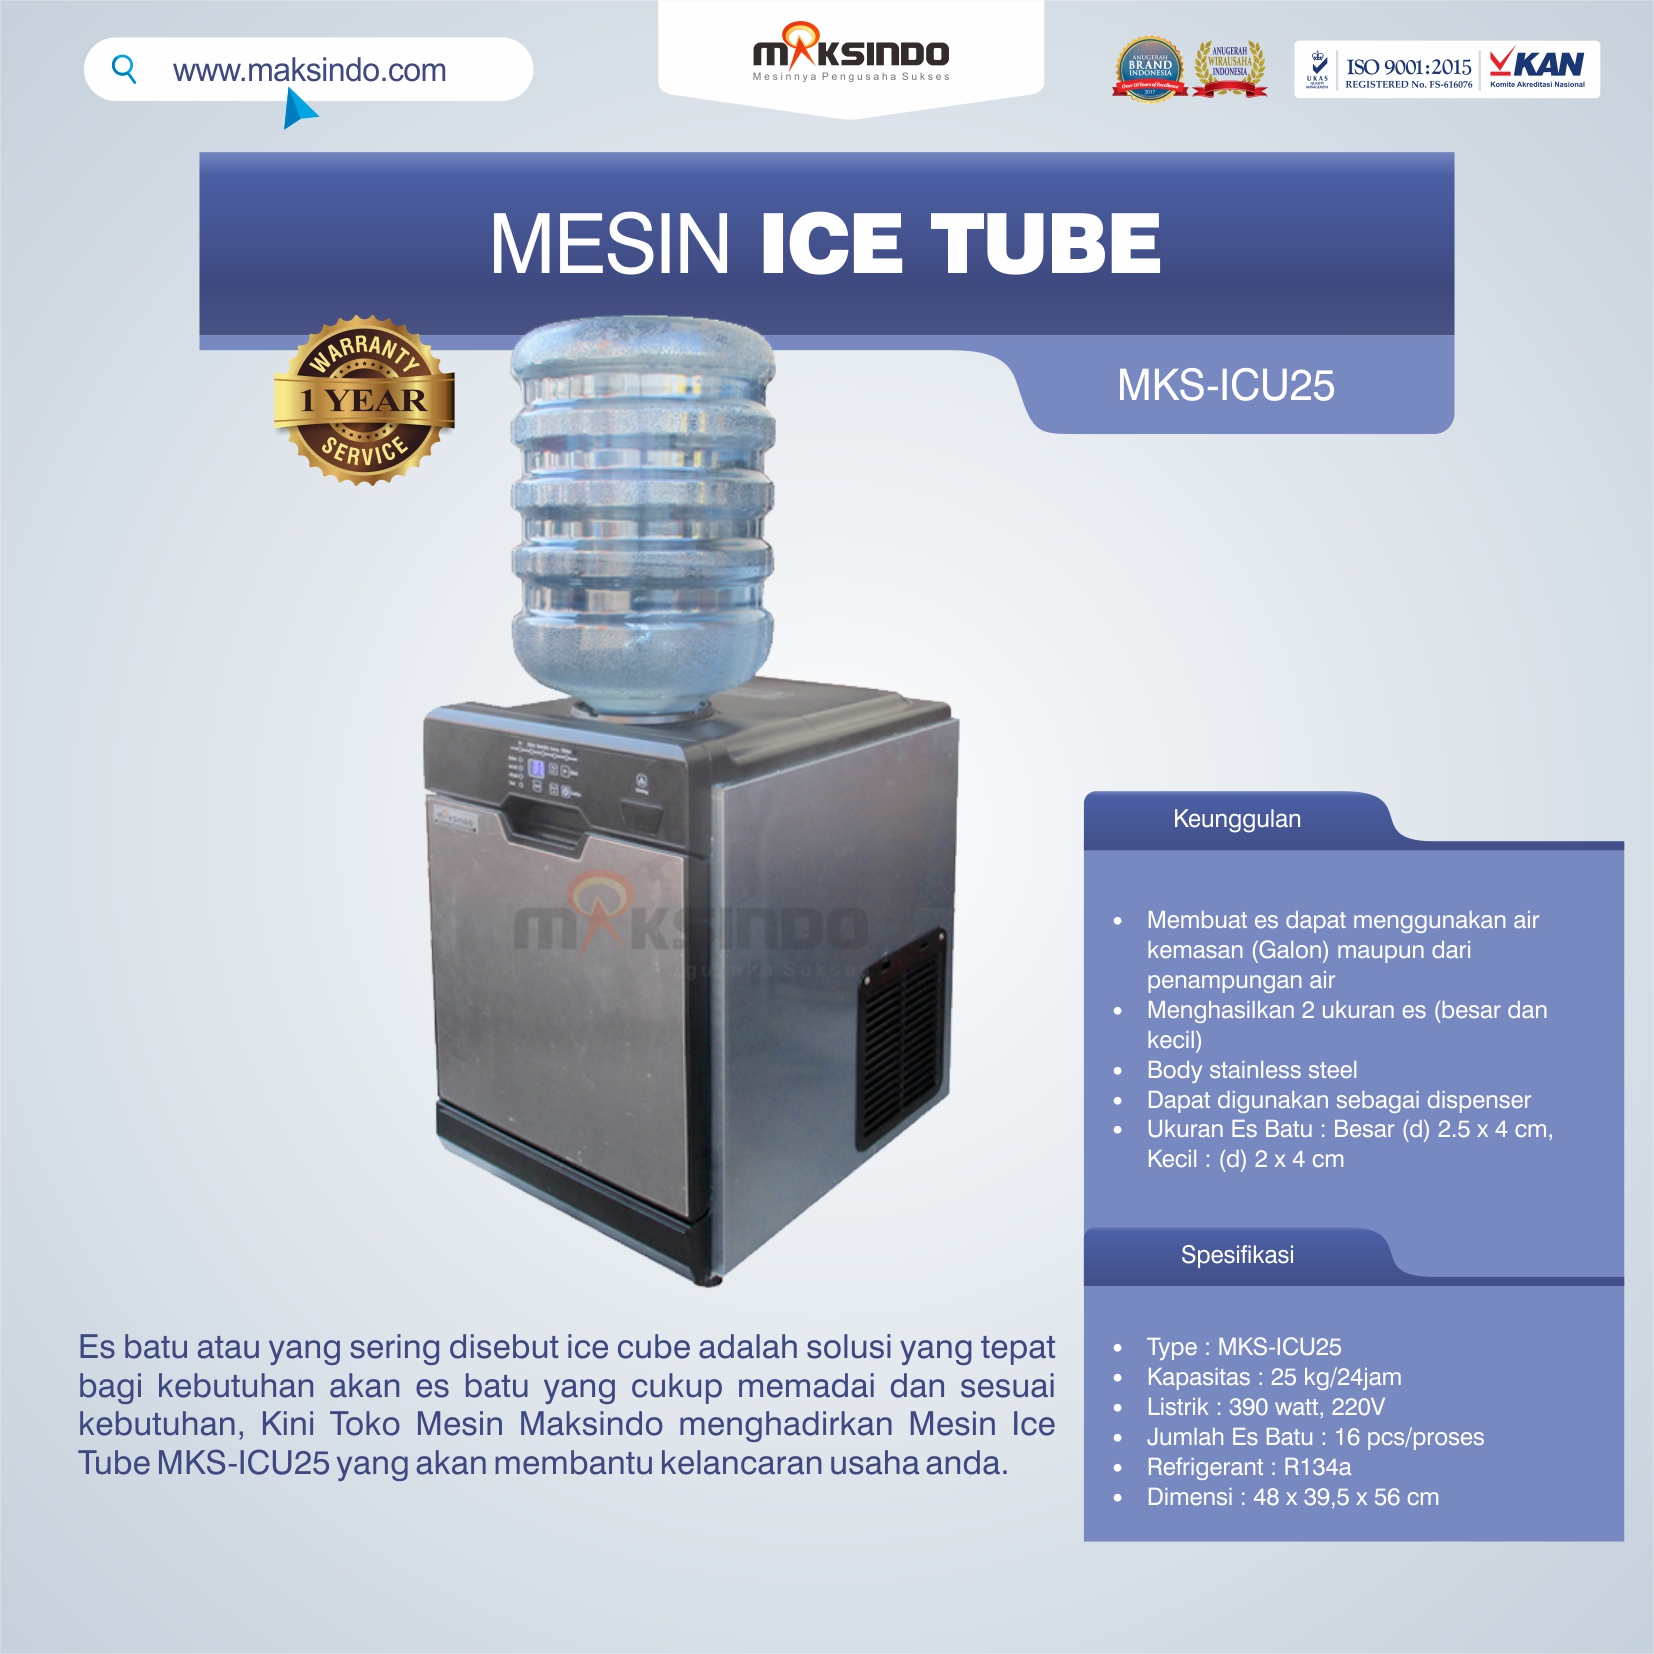 Mesin Ice Tube MKS-ICU25